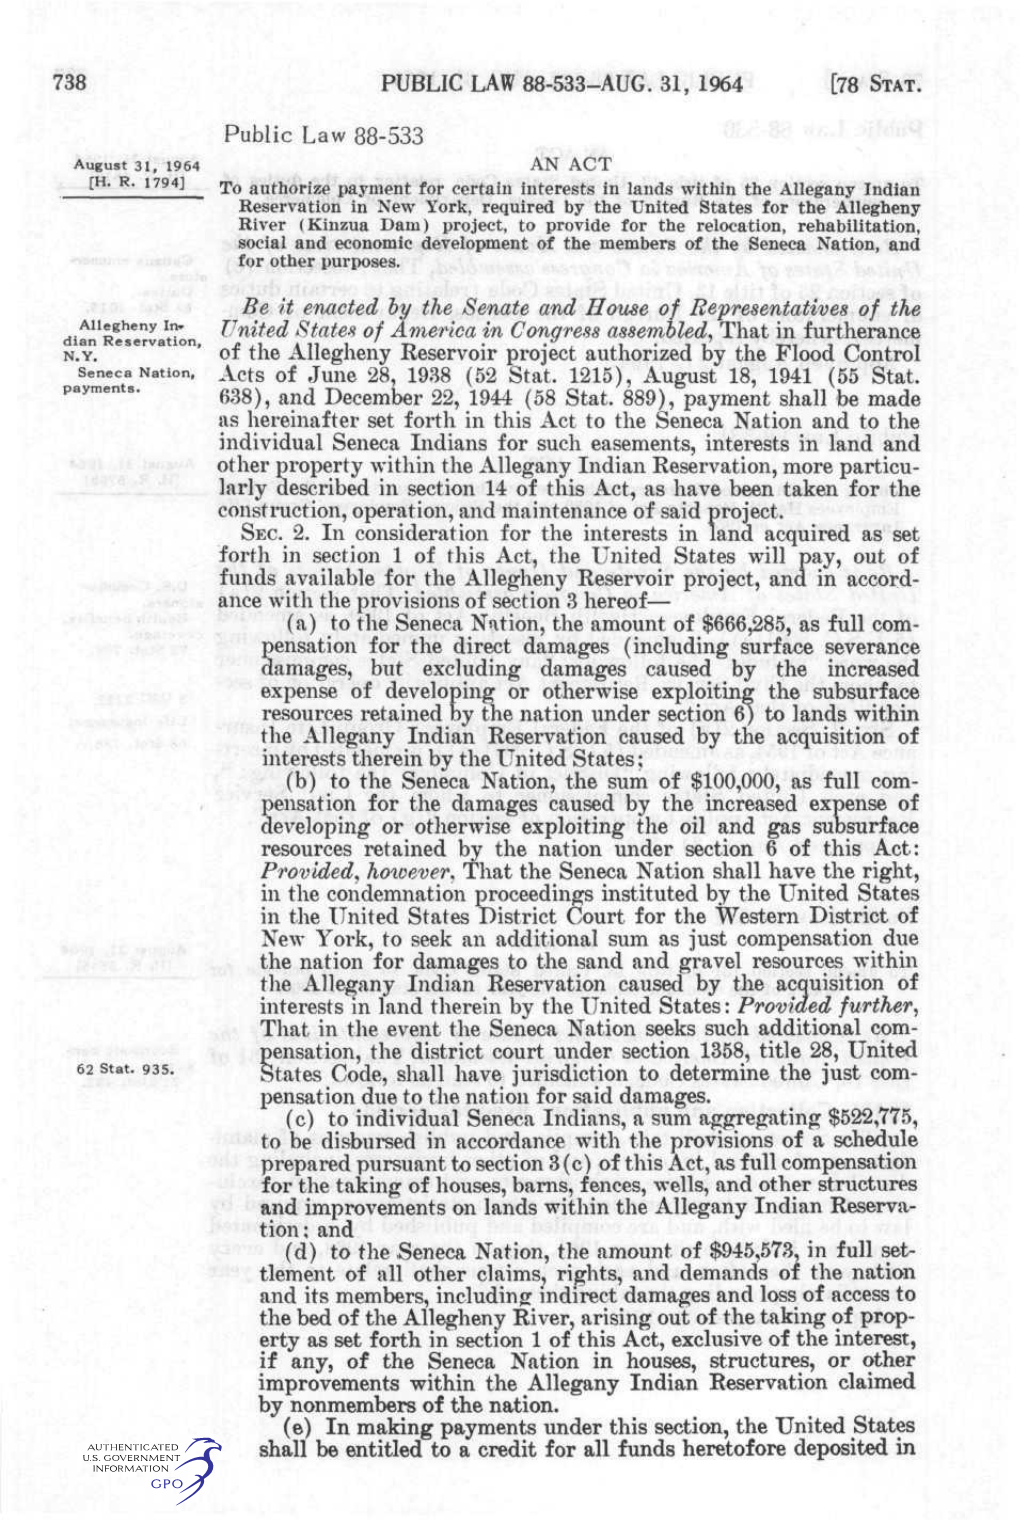 PUBLIC LAW 88-533-AUG. 31, 1964 Public Law 88-533